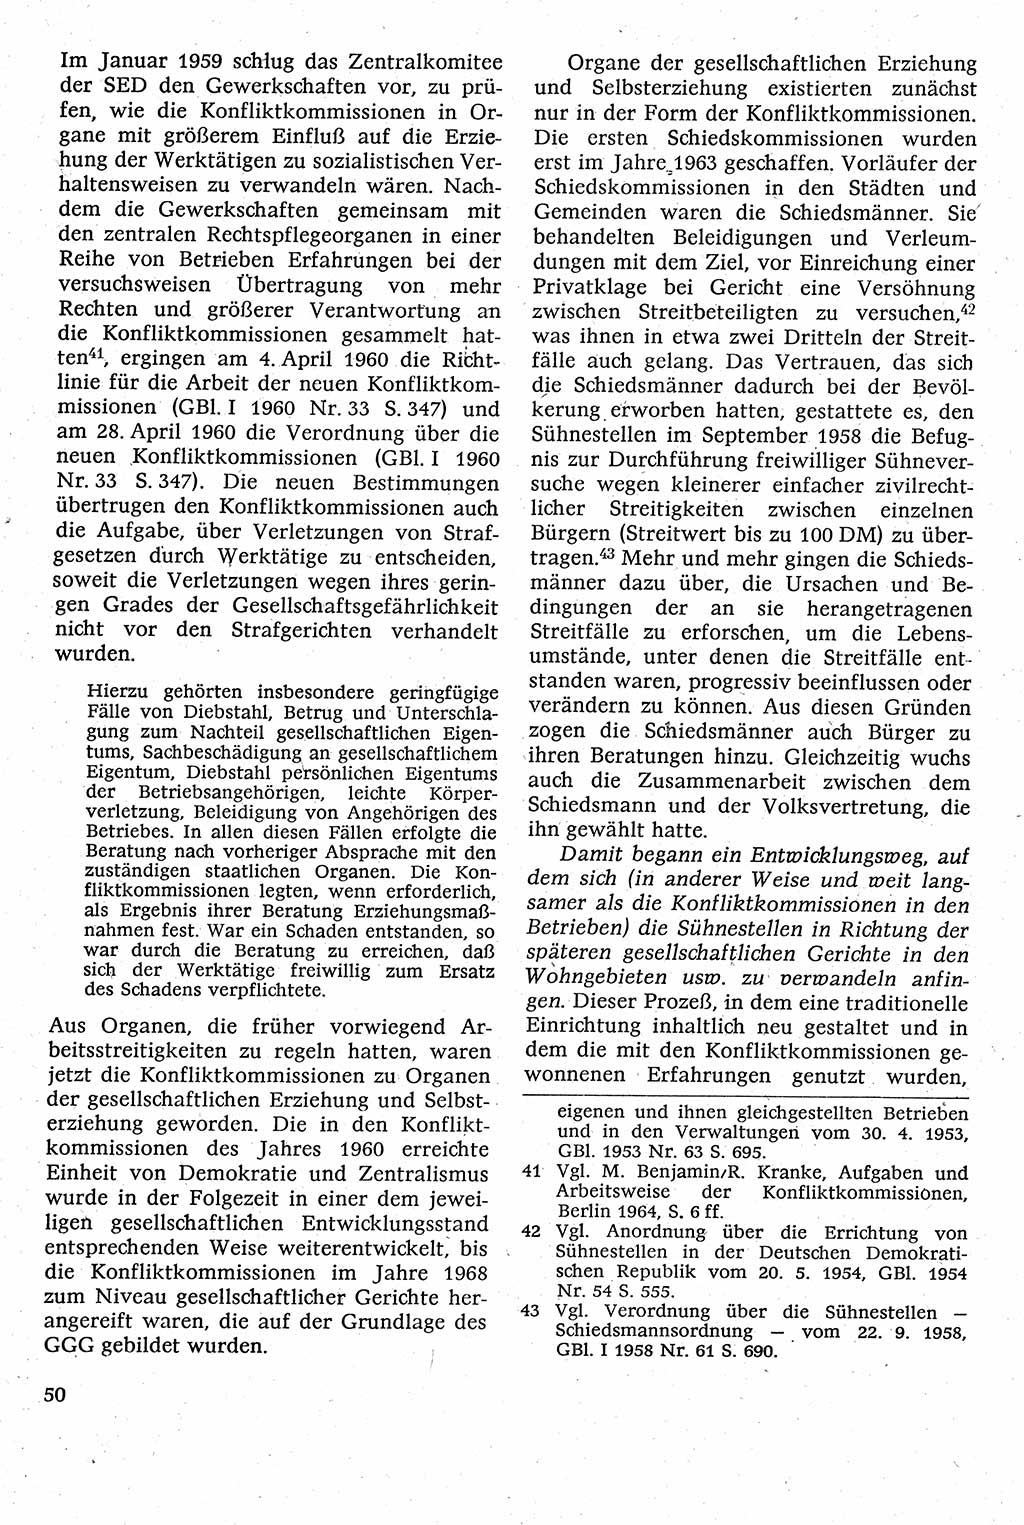 Strafverfahrensrecht [Deutsche Demokratische Republik (DDR)], Lehrbuch 1982, Seite 50 (Strafverf.-R. DDR Lb. 1982, S. 50)